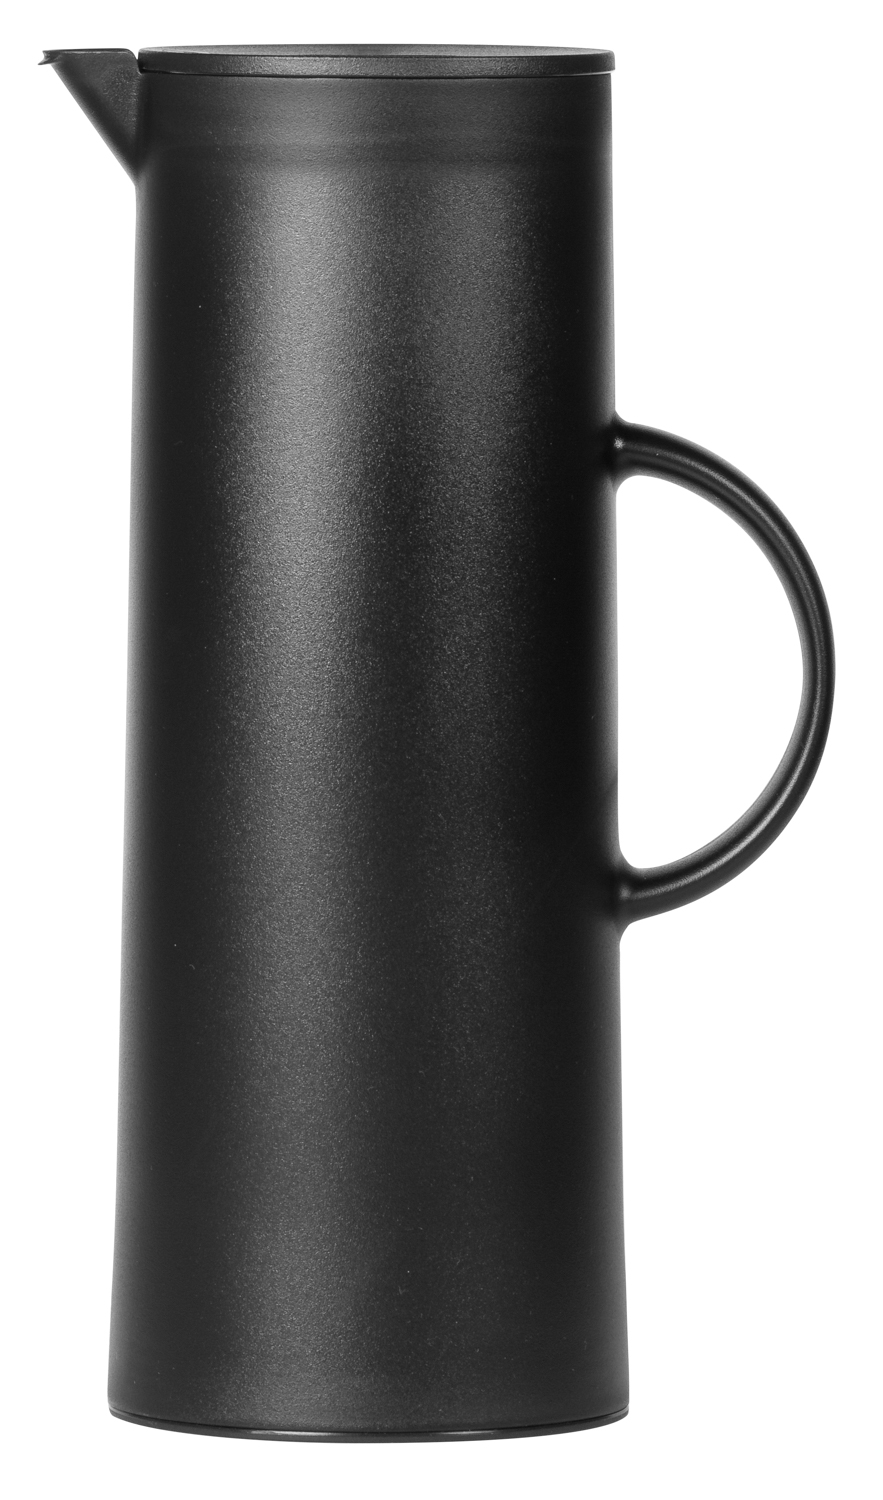 Isolierkanne "MANHATTAN", Inhalt 1 Liter, außen aus schwarzem Kunststoff, innen mit Glaskolben